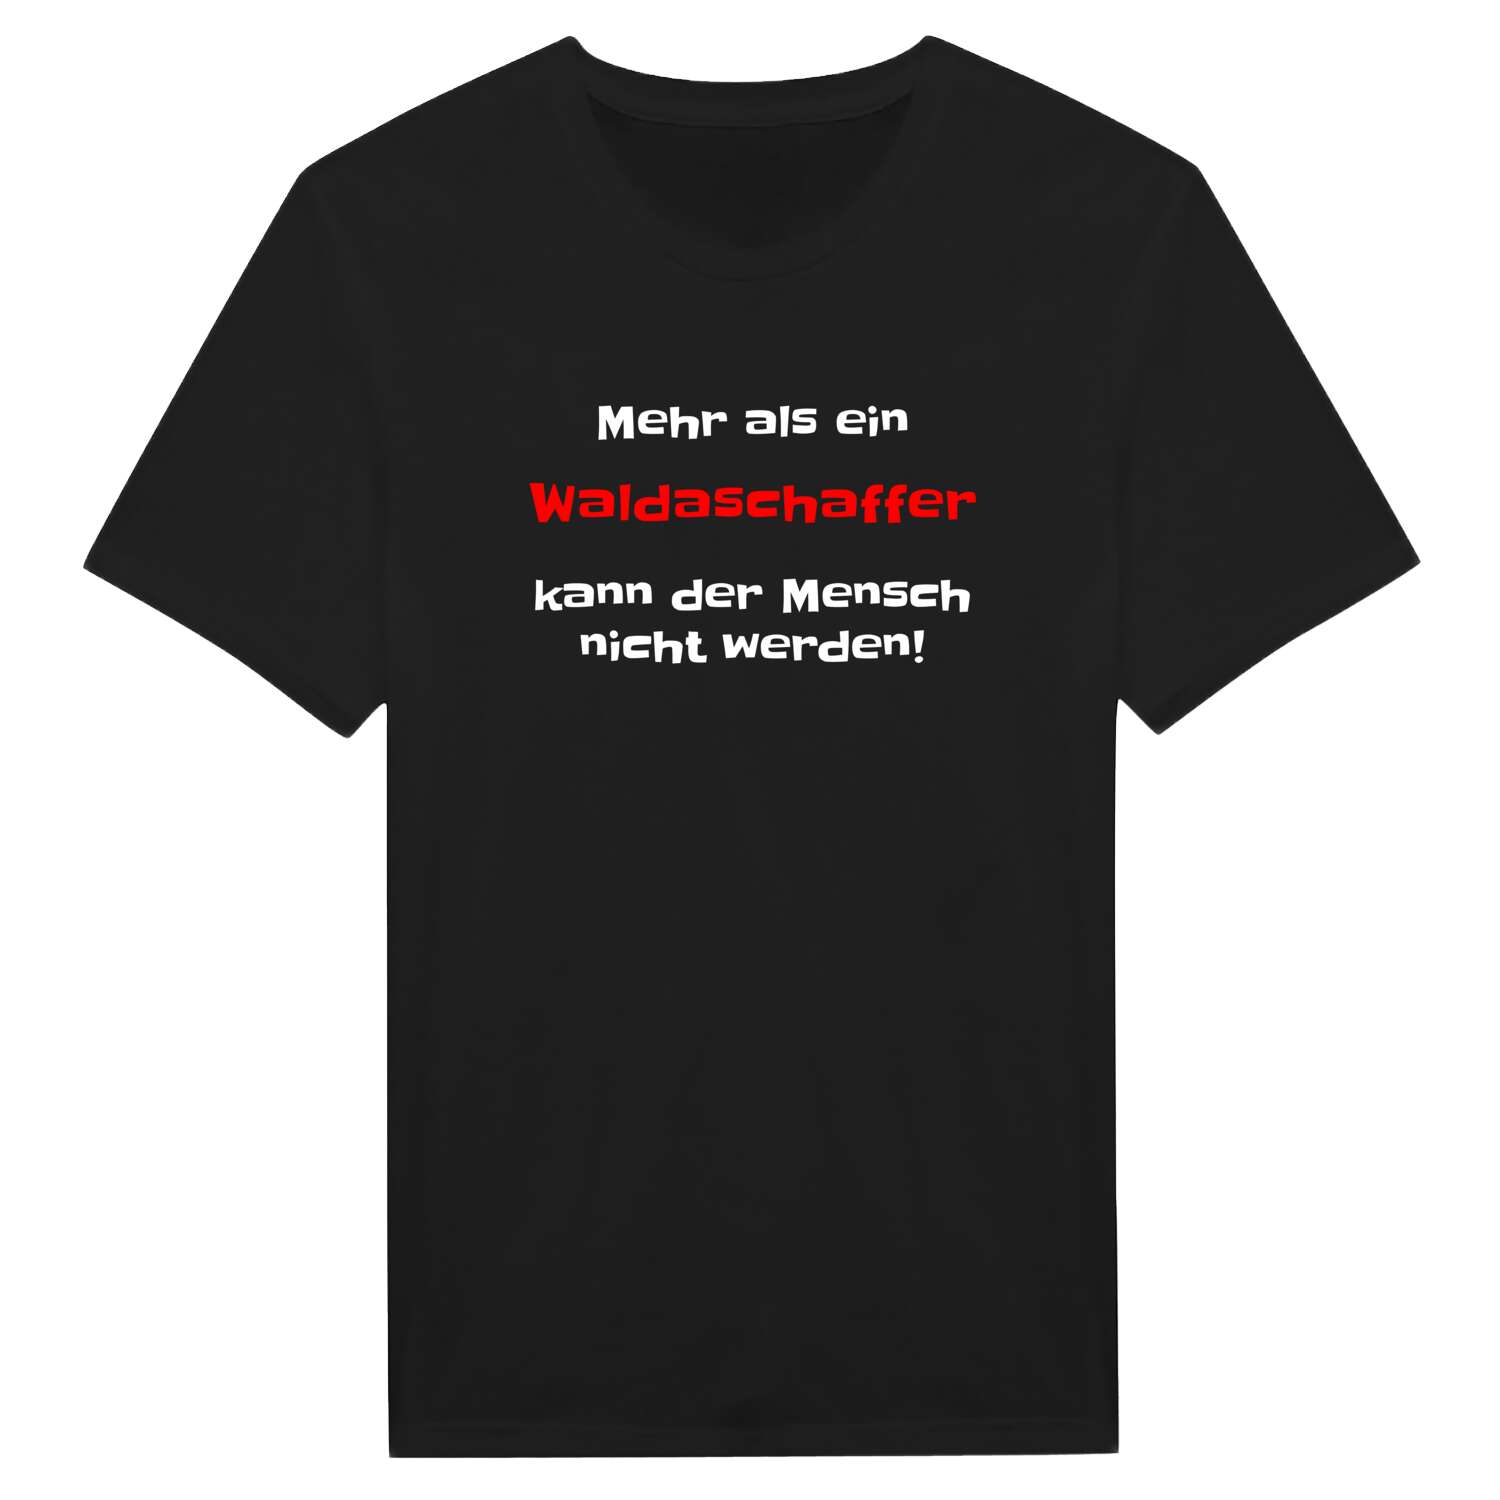 Waldaschaff T-Shirt »Mehr als ein«